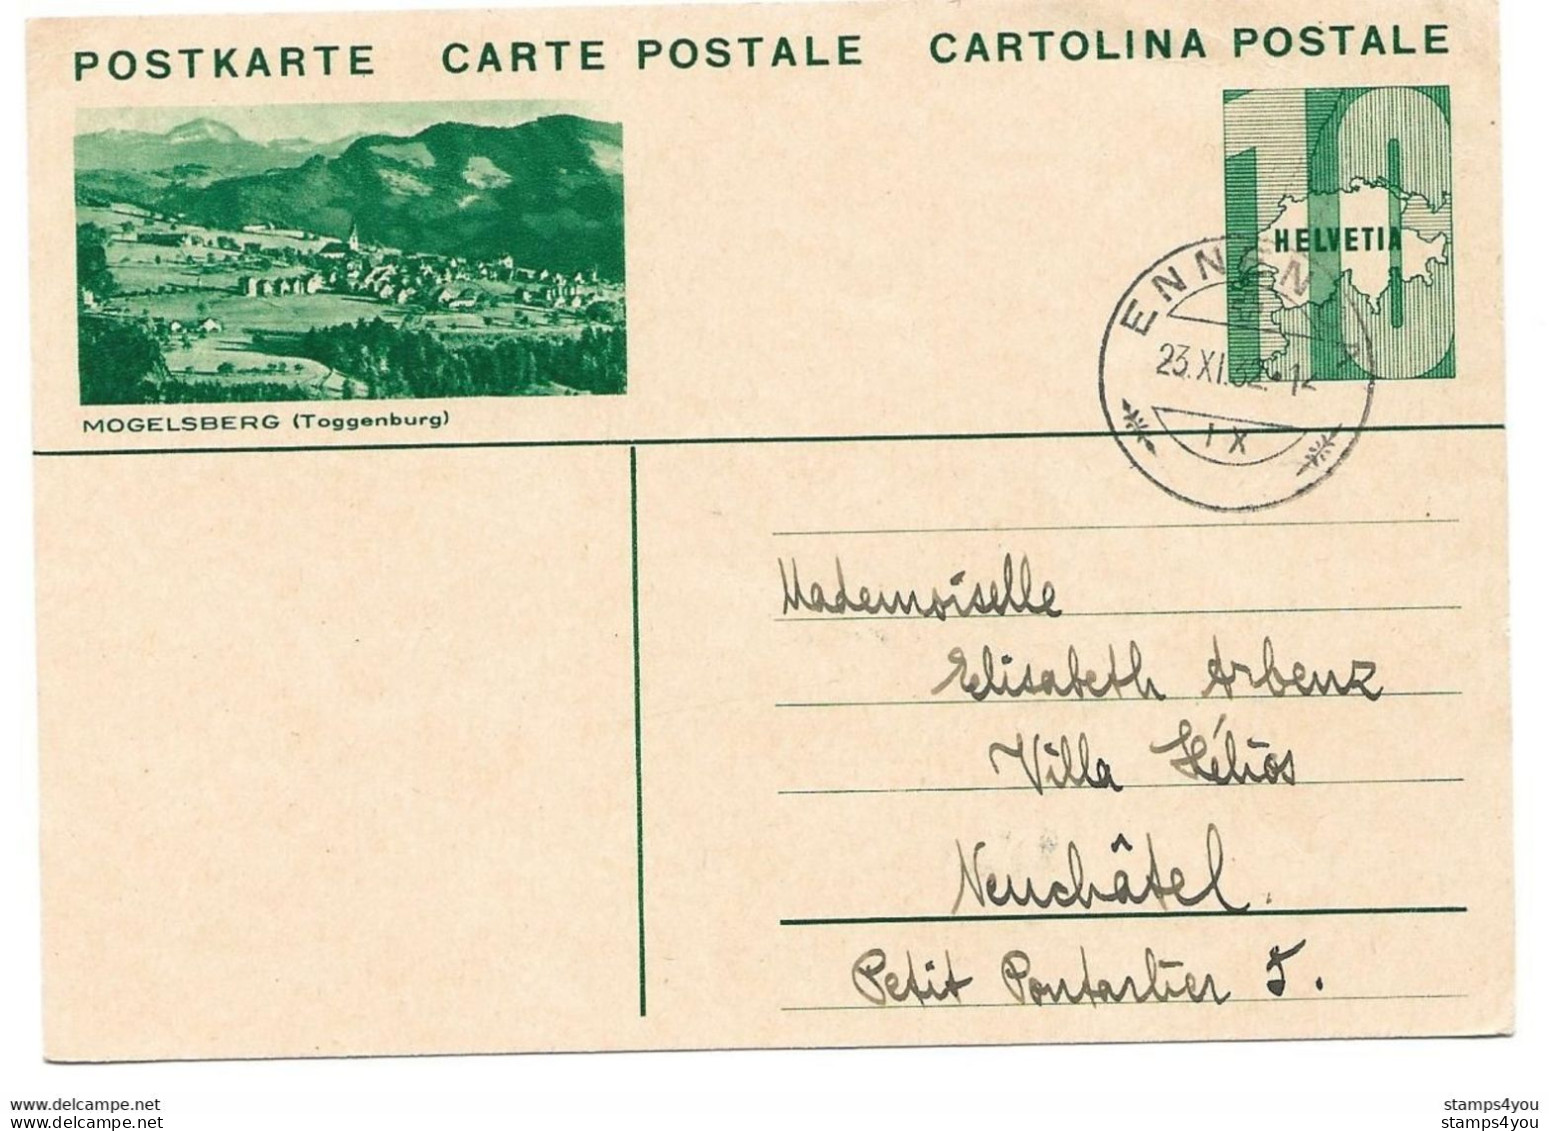 103 - 99 - Entier Postal Avec Illustration "Mogelsberg" Superbe Cachet à Date Ennenda 1932 - Entiers Postaux